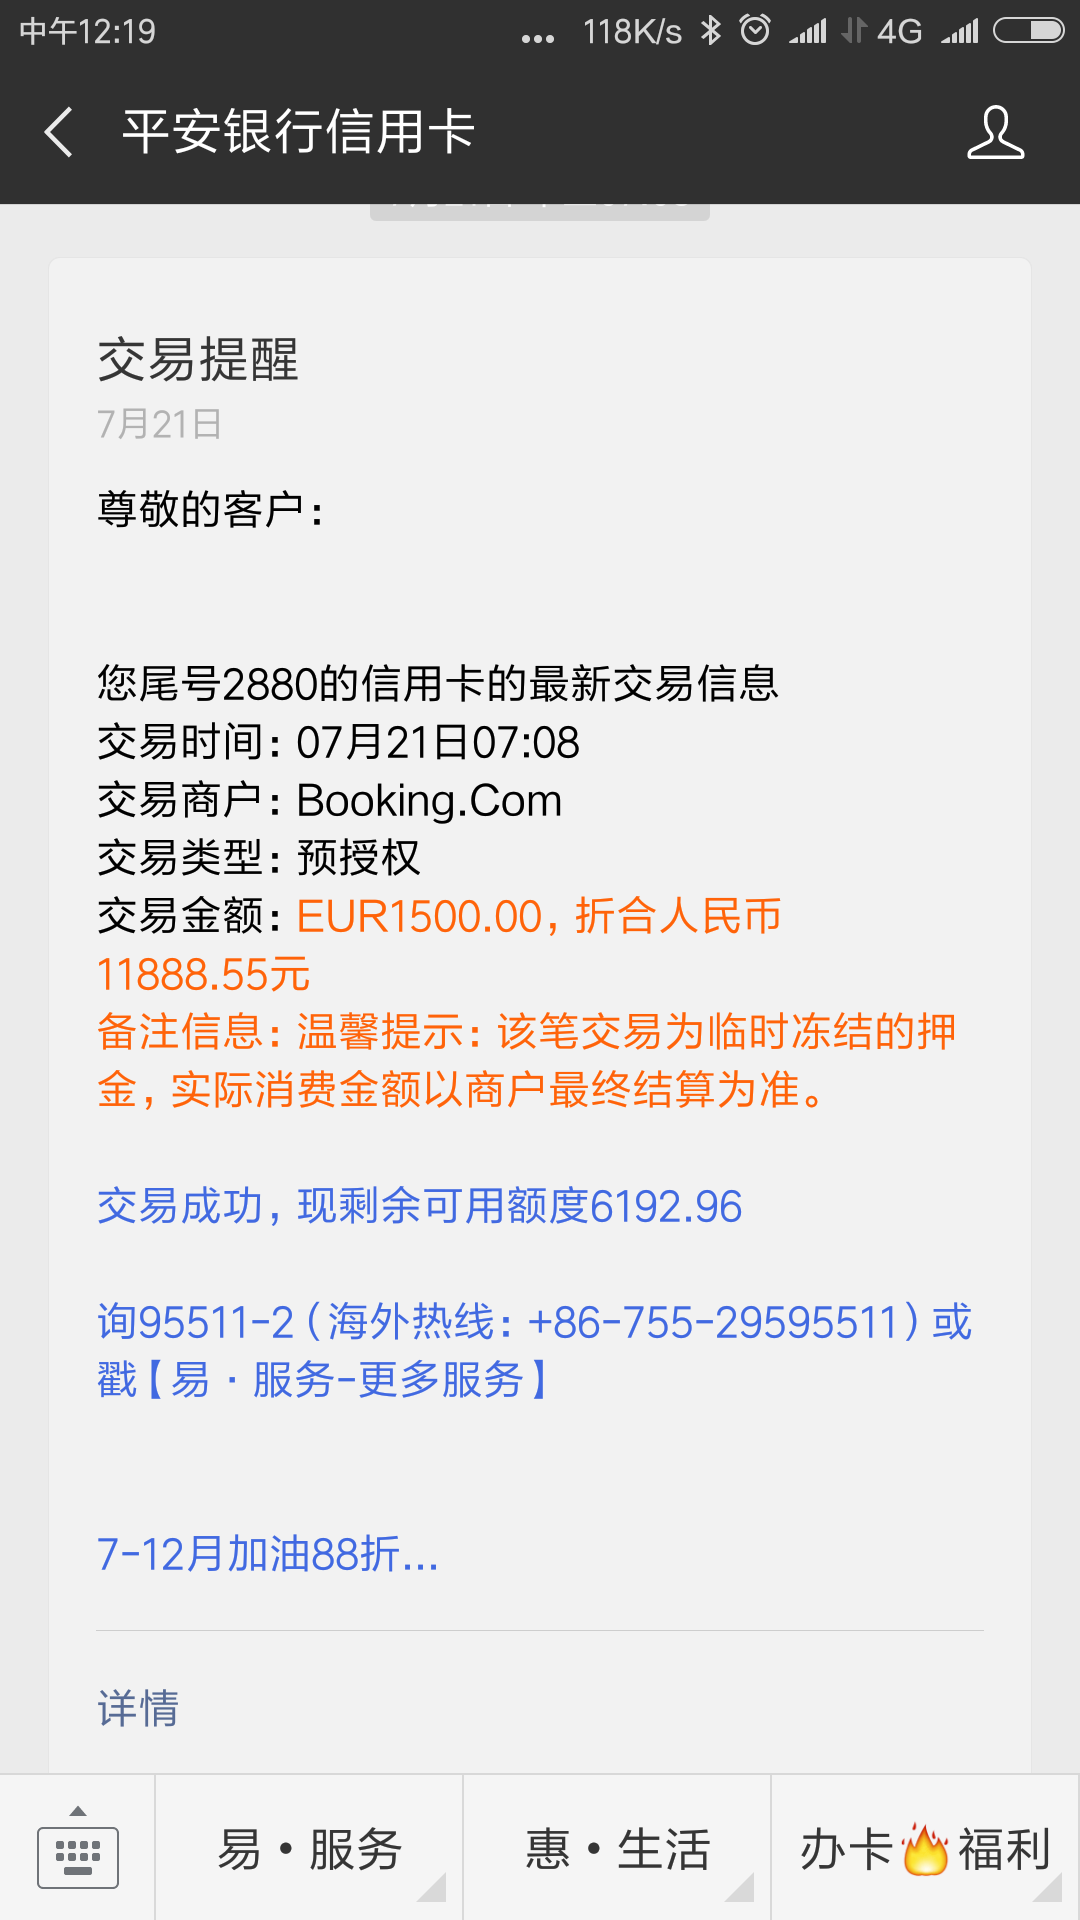 平安银行信用卡无故被盗刷1500欧元，通过booking.com交易—-事件记录（8月10日更新，未完….）插图